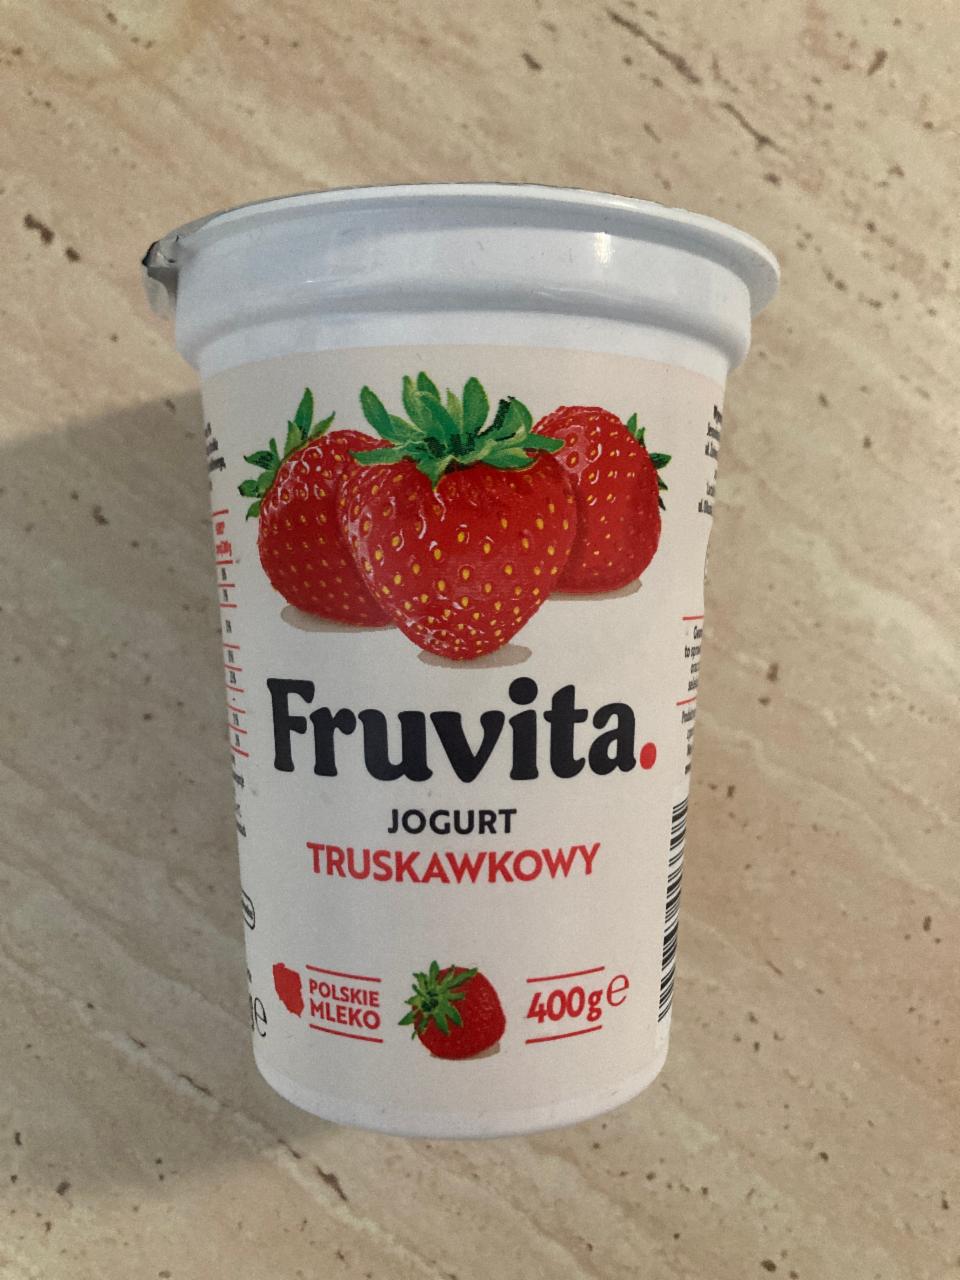 Zdjęcia - Jogurt Truskawkowy FruVita